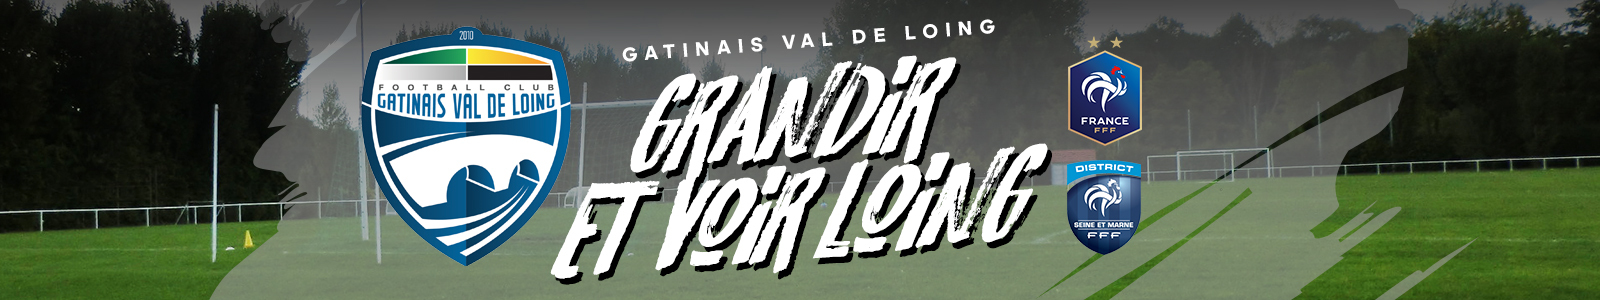 GATINAIS VAL DE LOING FC : site officiel du club de foot de Souppes-sur-Loing - footeo